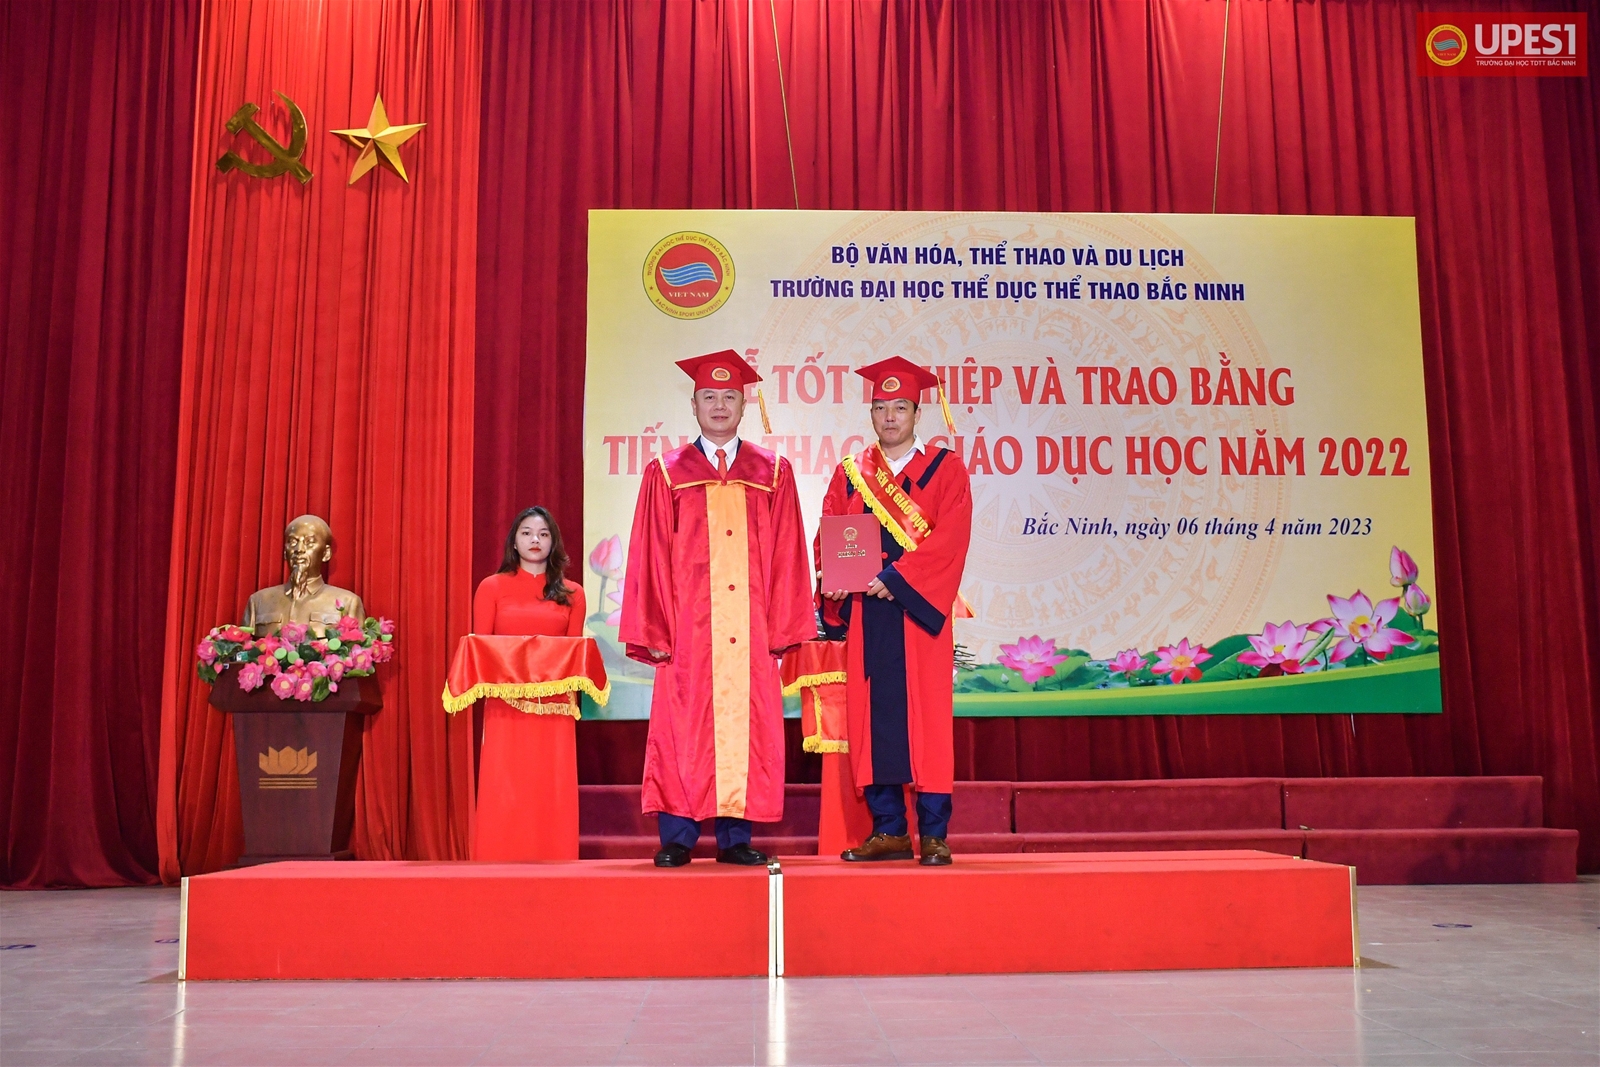 Lễ tốt nghiệp và trao bằng Tiến sĩ, Thạc sĩ giáo dục học năm 2022